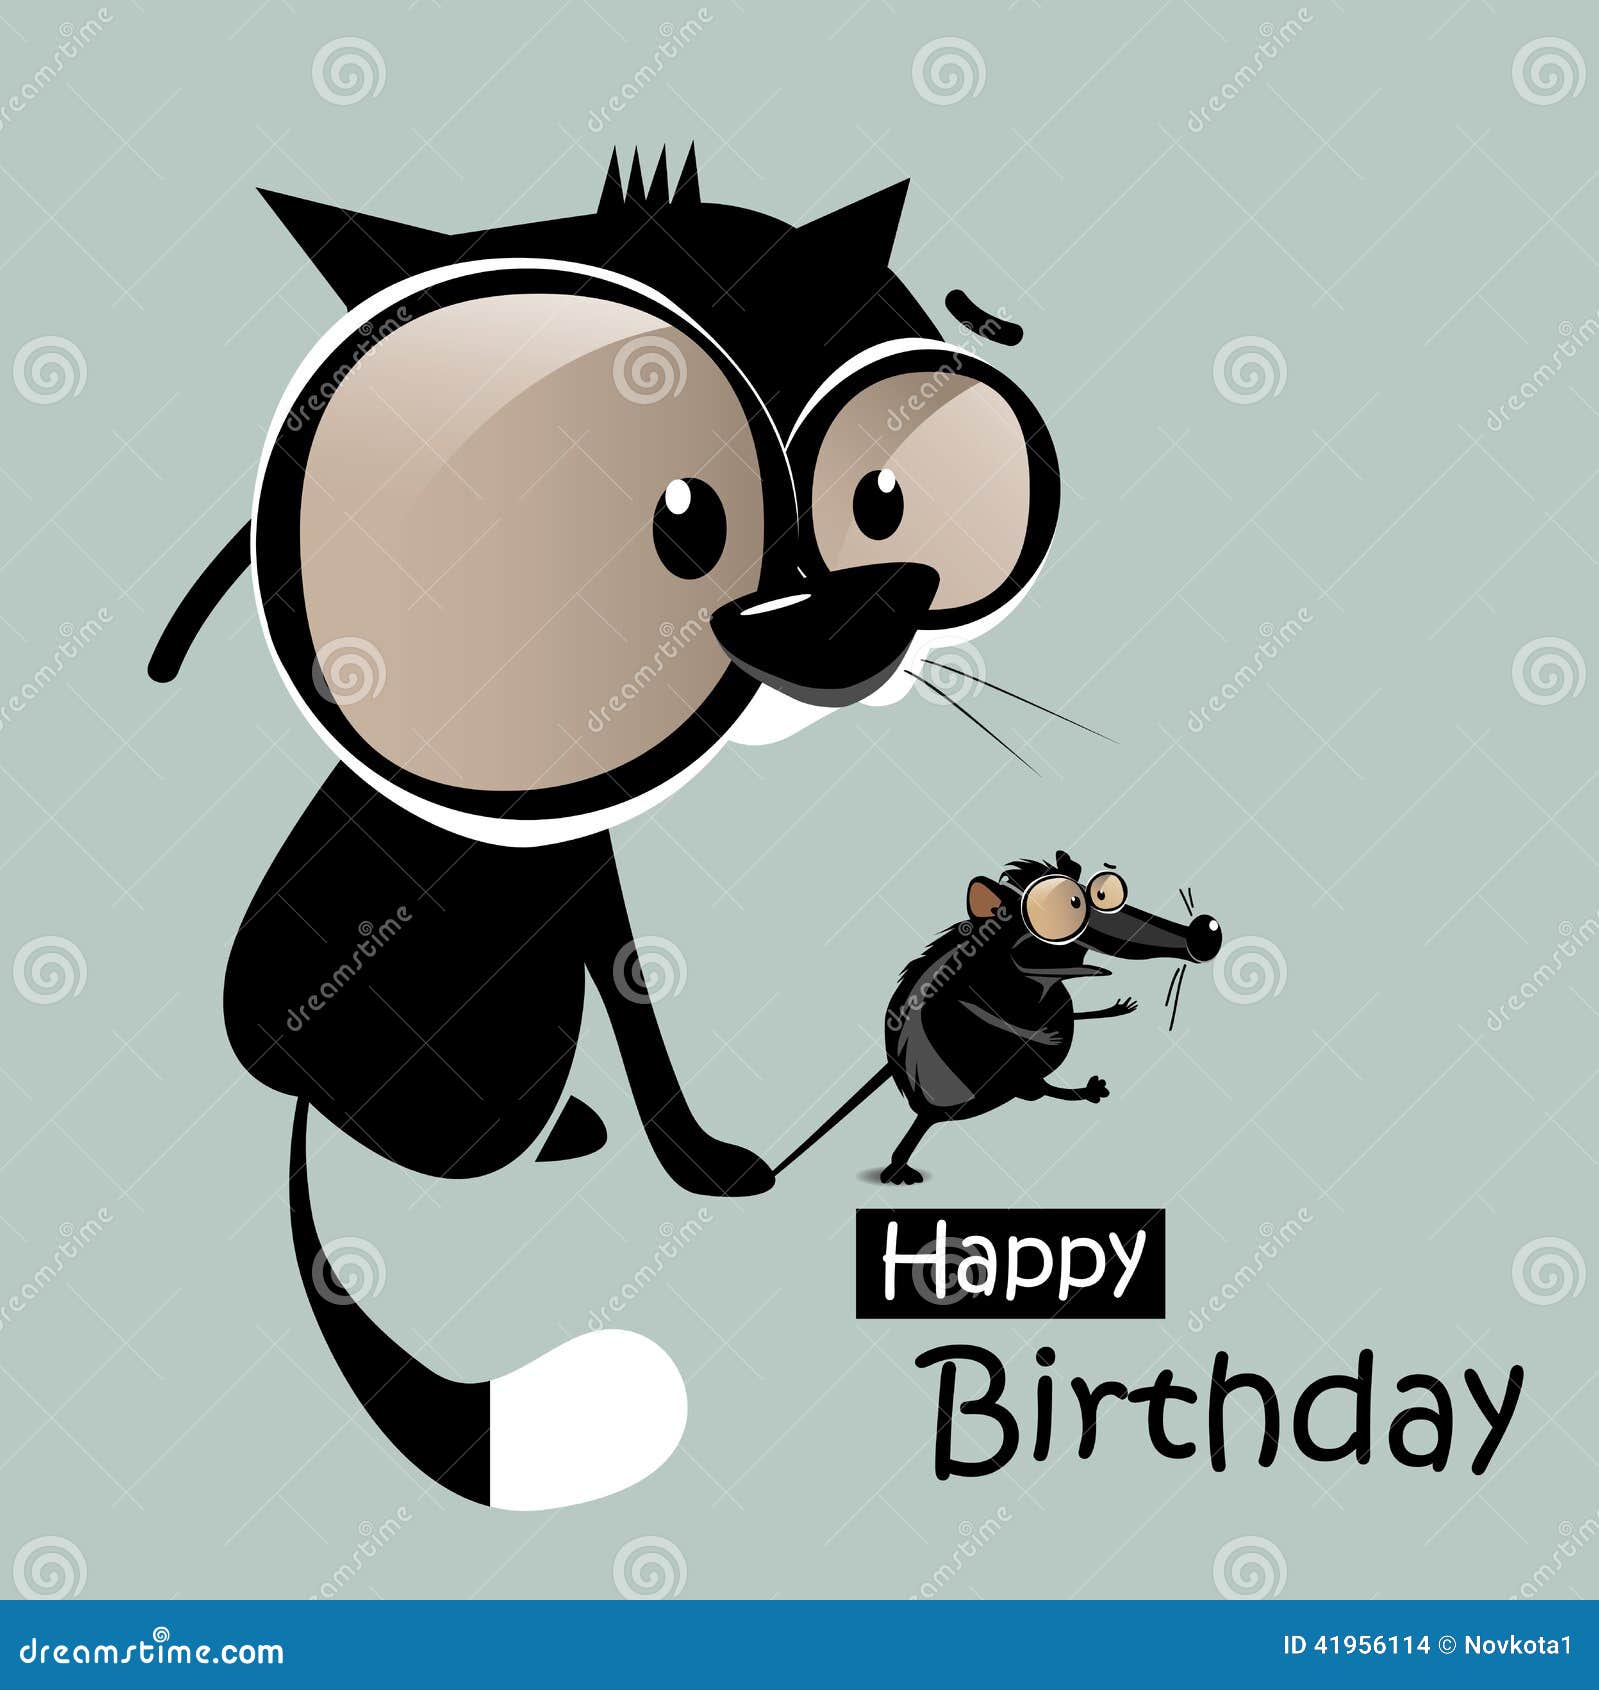 wszystkiego-najlepszego-z-okazji-urodzin-mysz-z-kota-umiechem-41956114.jpg